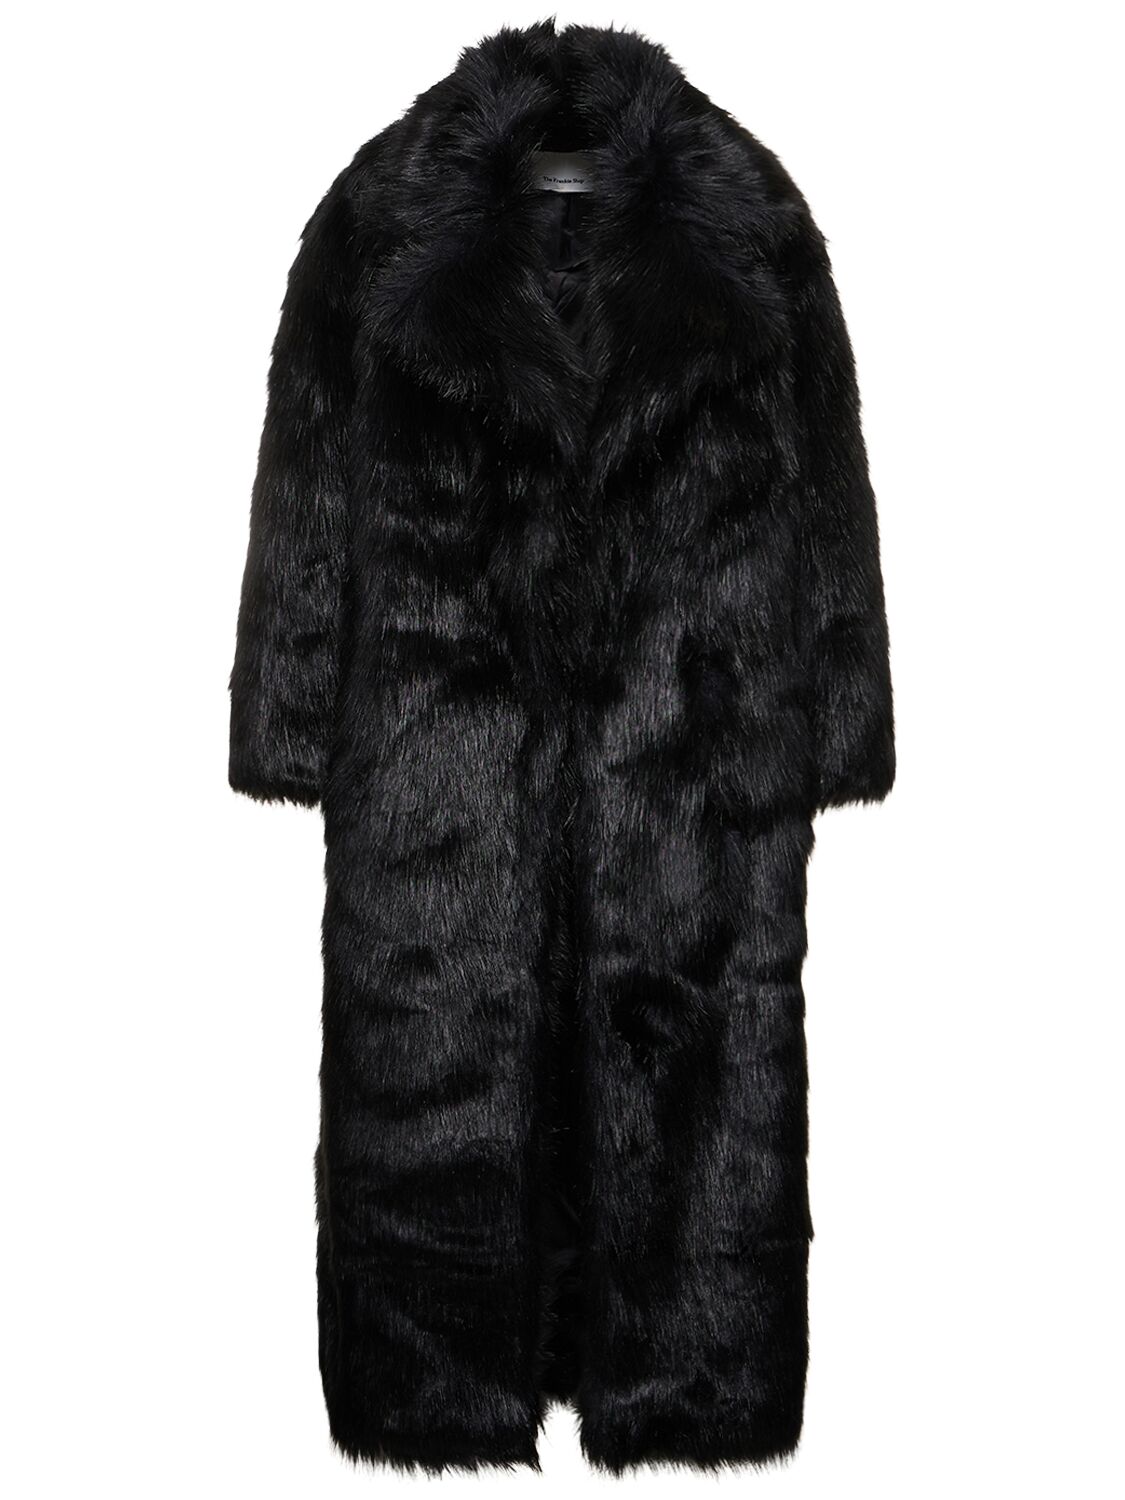 Joan Long Faux Fur Coat – WOMEN > CLOTHING > COATS